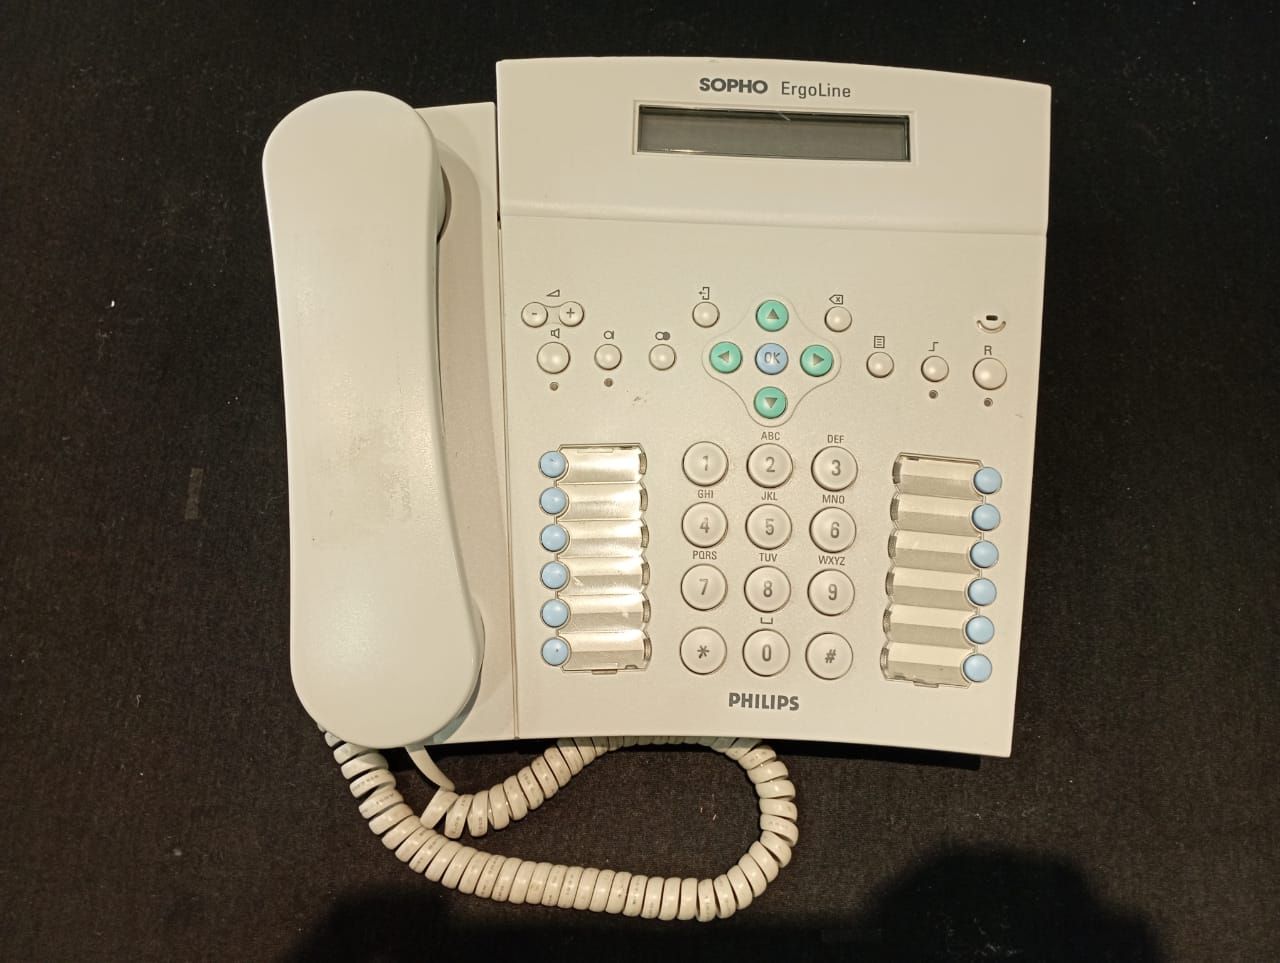 Aparelho telefônico Digital, modelo Ergoline D-330, marca PHILIPS. Essa peça foi utilizada pela Secretaria-Geral da Presidência, no período de 2010 a 2012, foi adquirida em 2010.